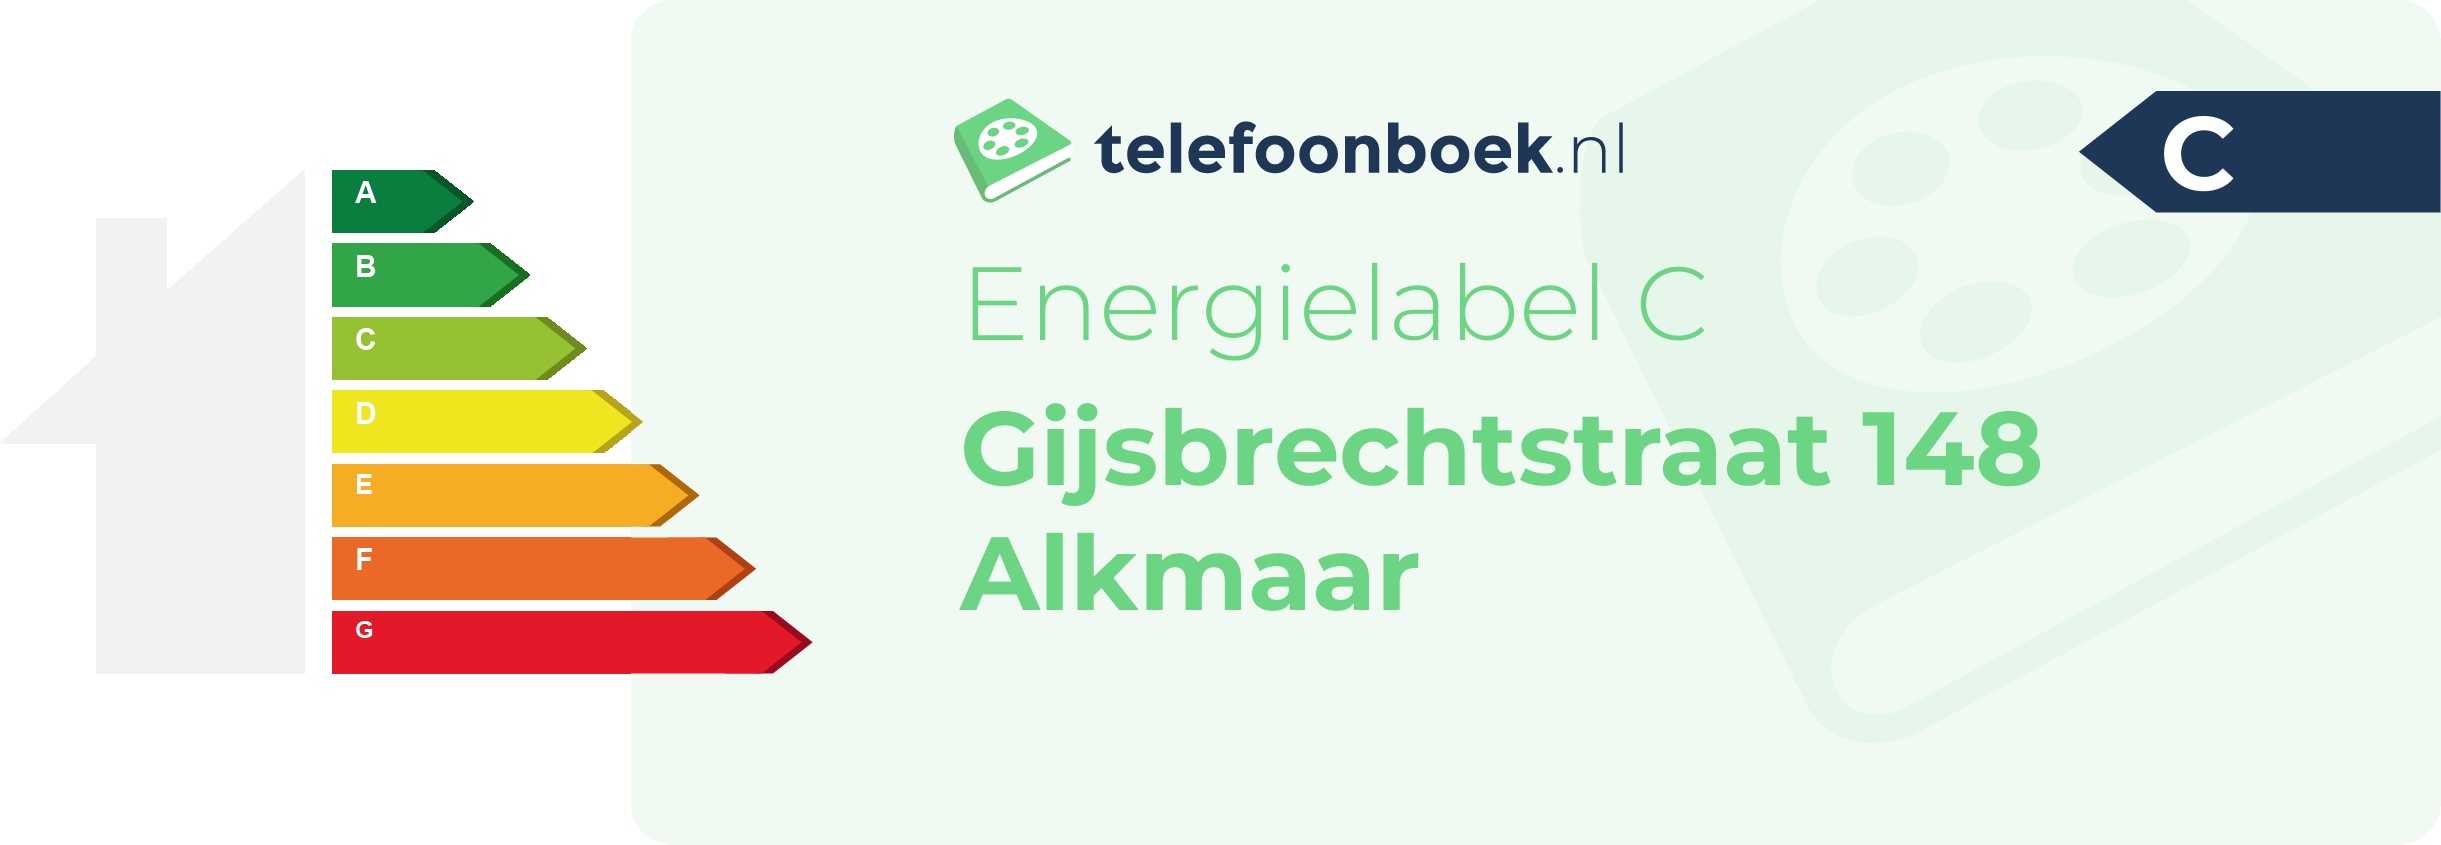 Energielabel Gijsbrechtstraat 148 Alkmaar